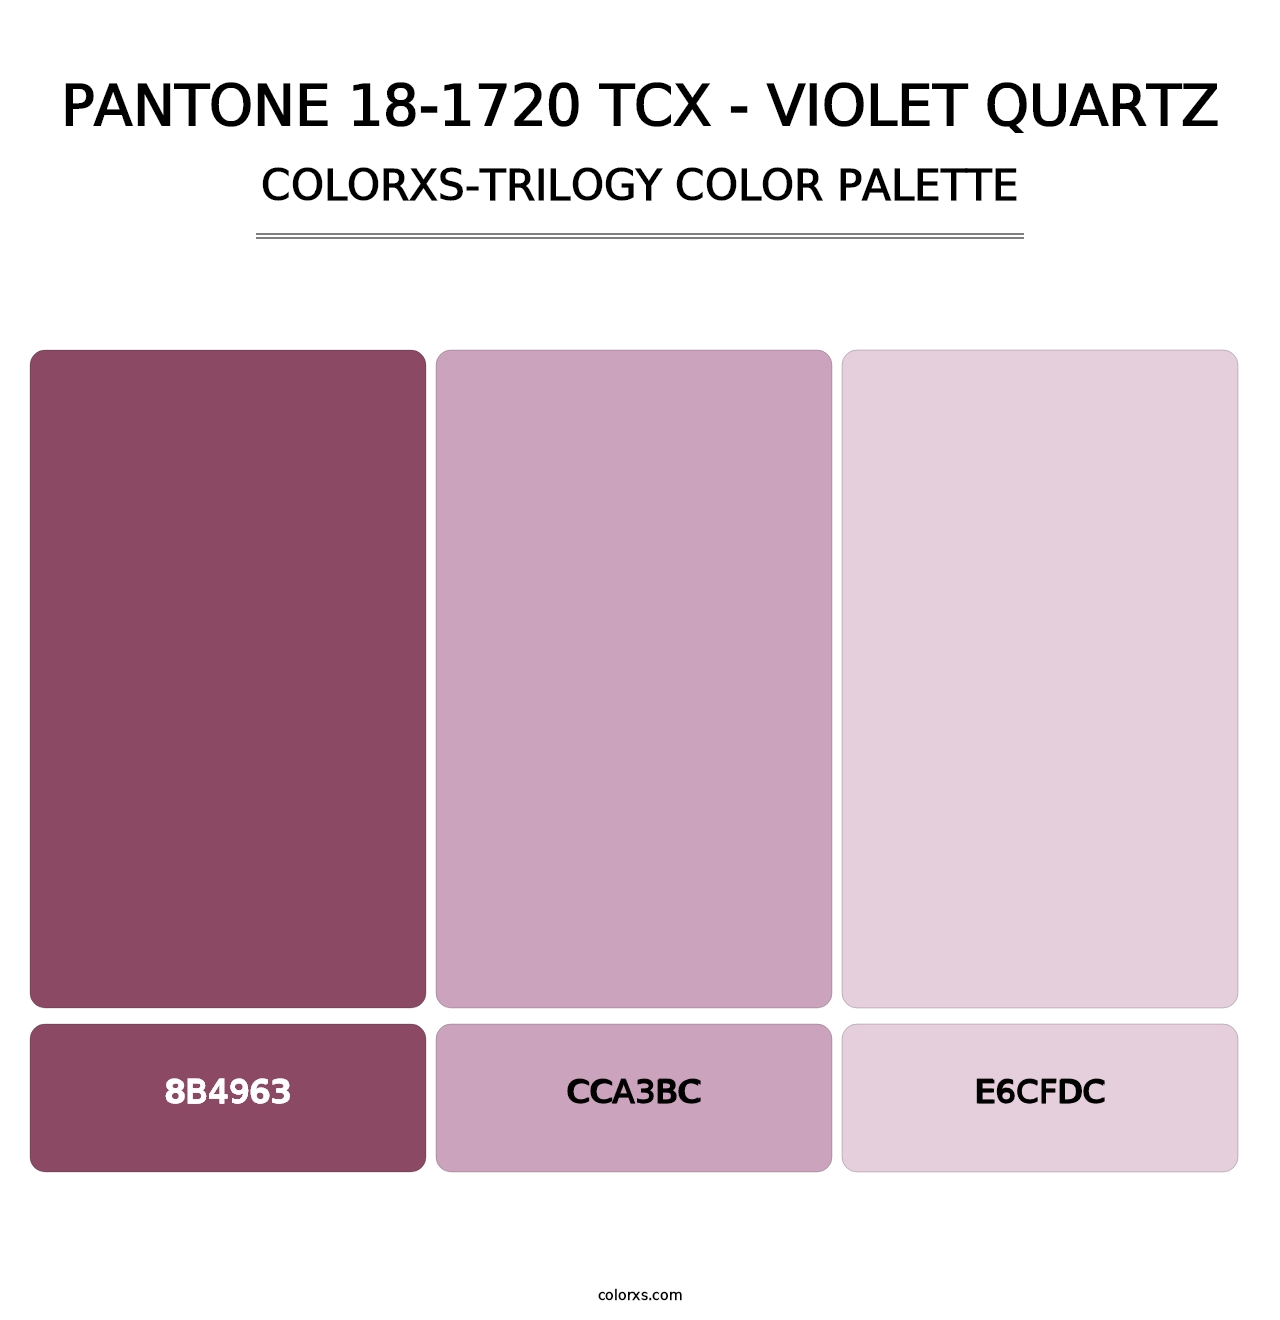 PANTONE 18-1720 TCX - Violet Quartz - Colorxs Trilogy Palette